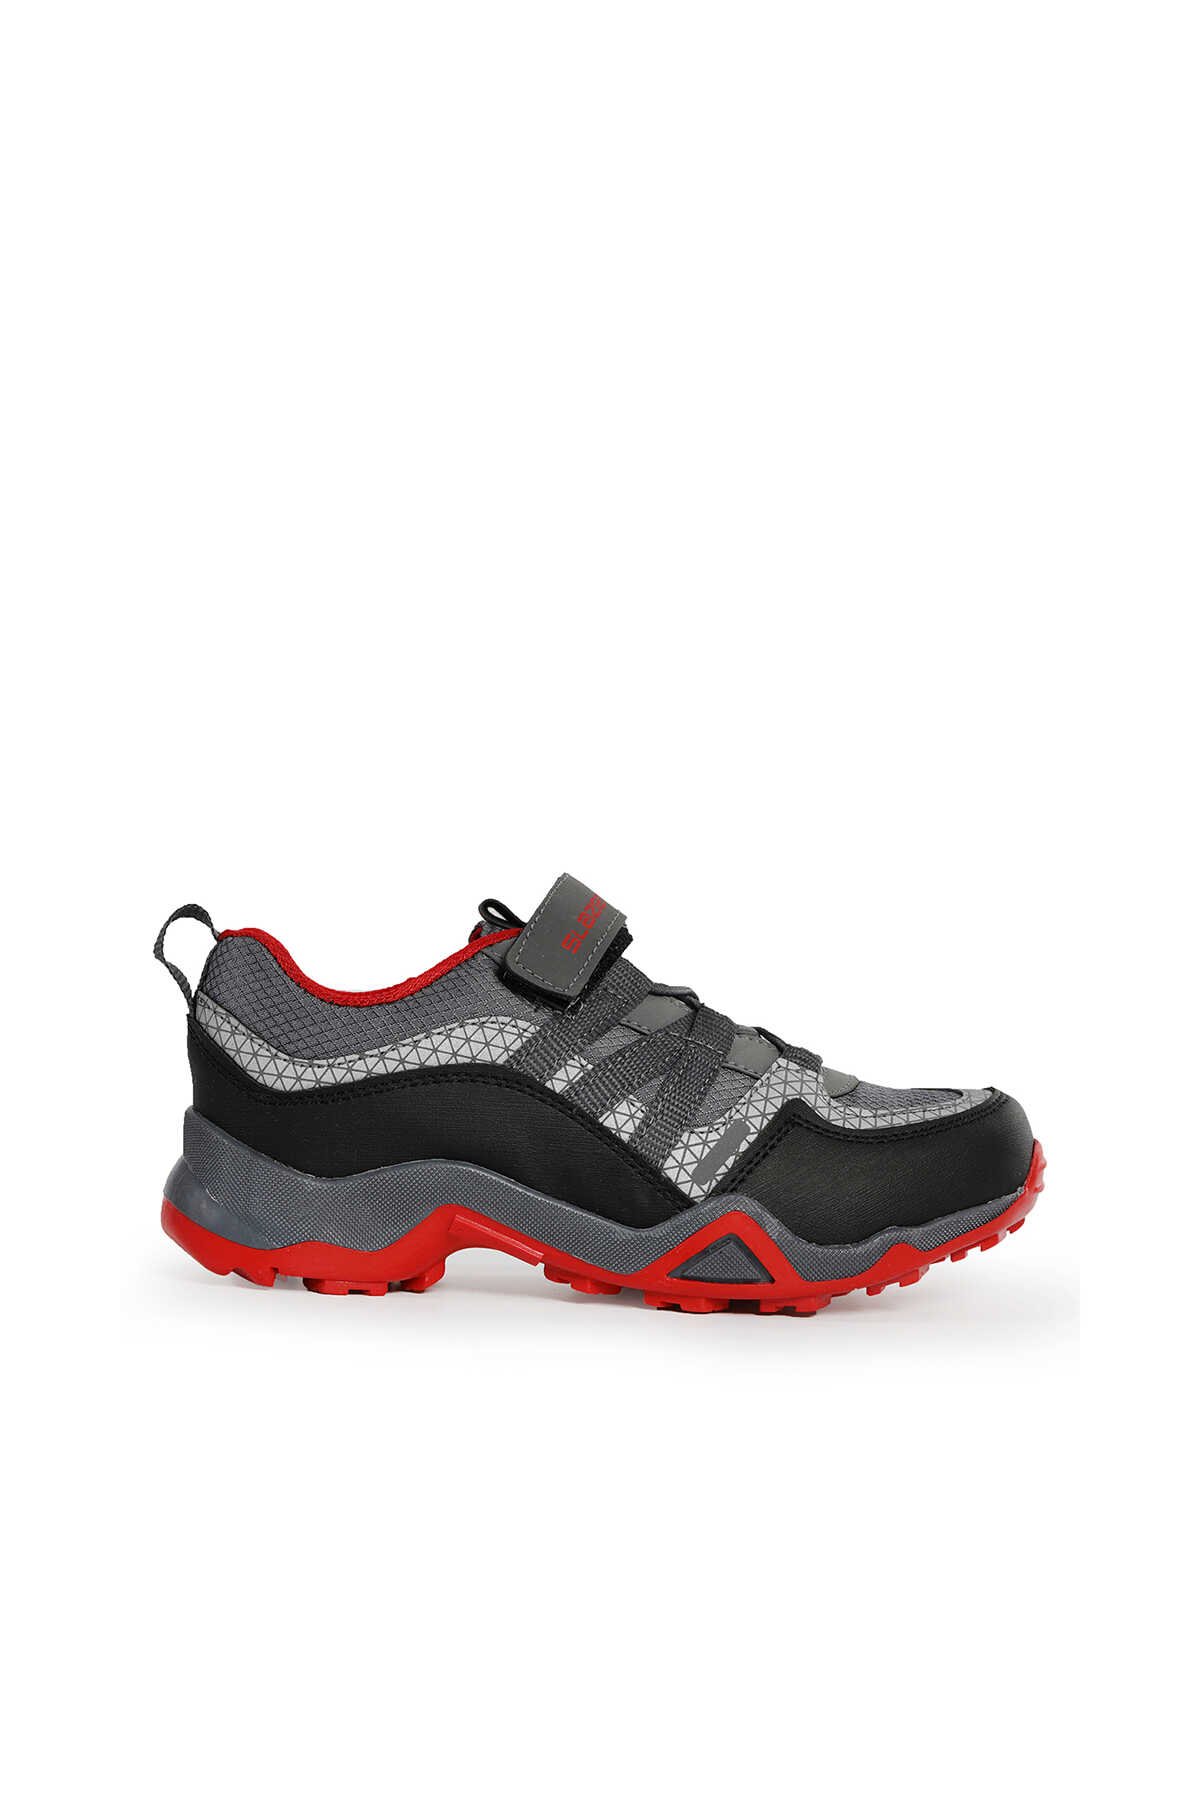 Slazenger - Slazenger ALDONA Sneaker Erkek Çocuk Ayakkabı Koyu Gri / Siyah